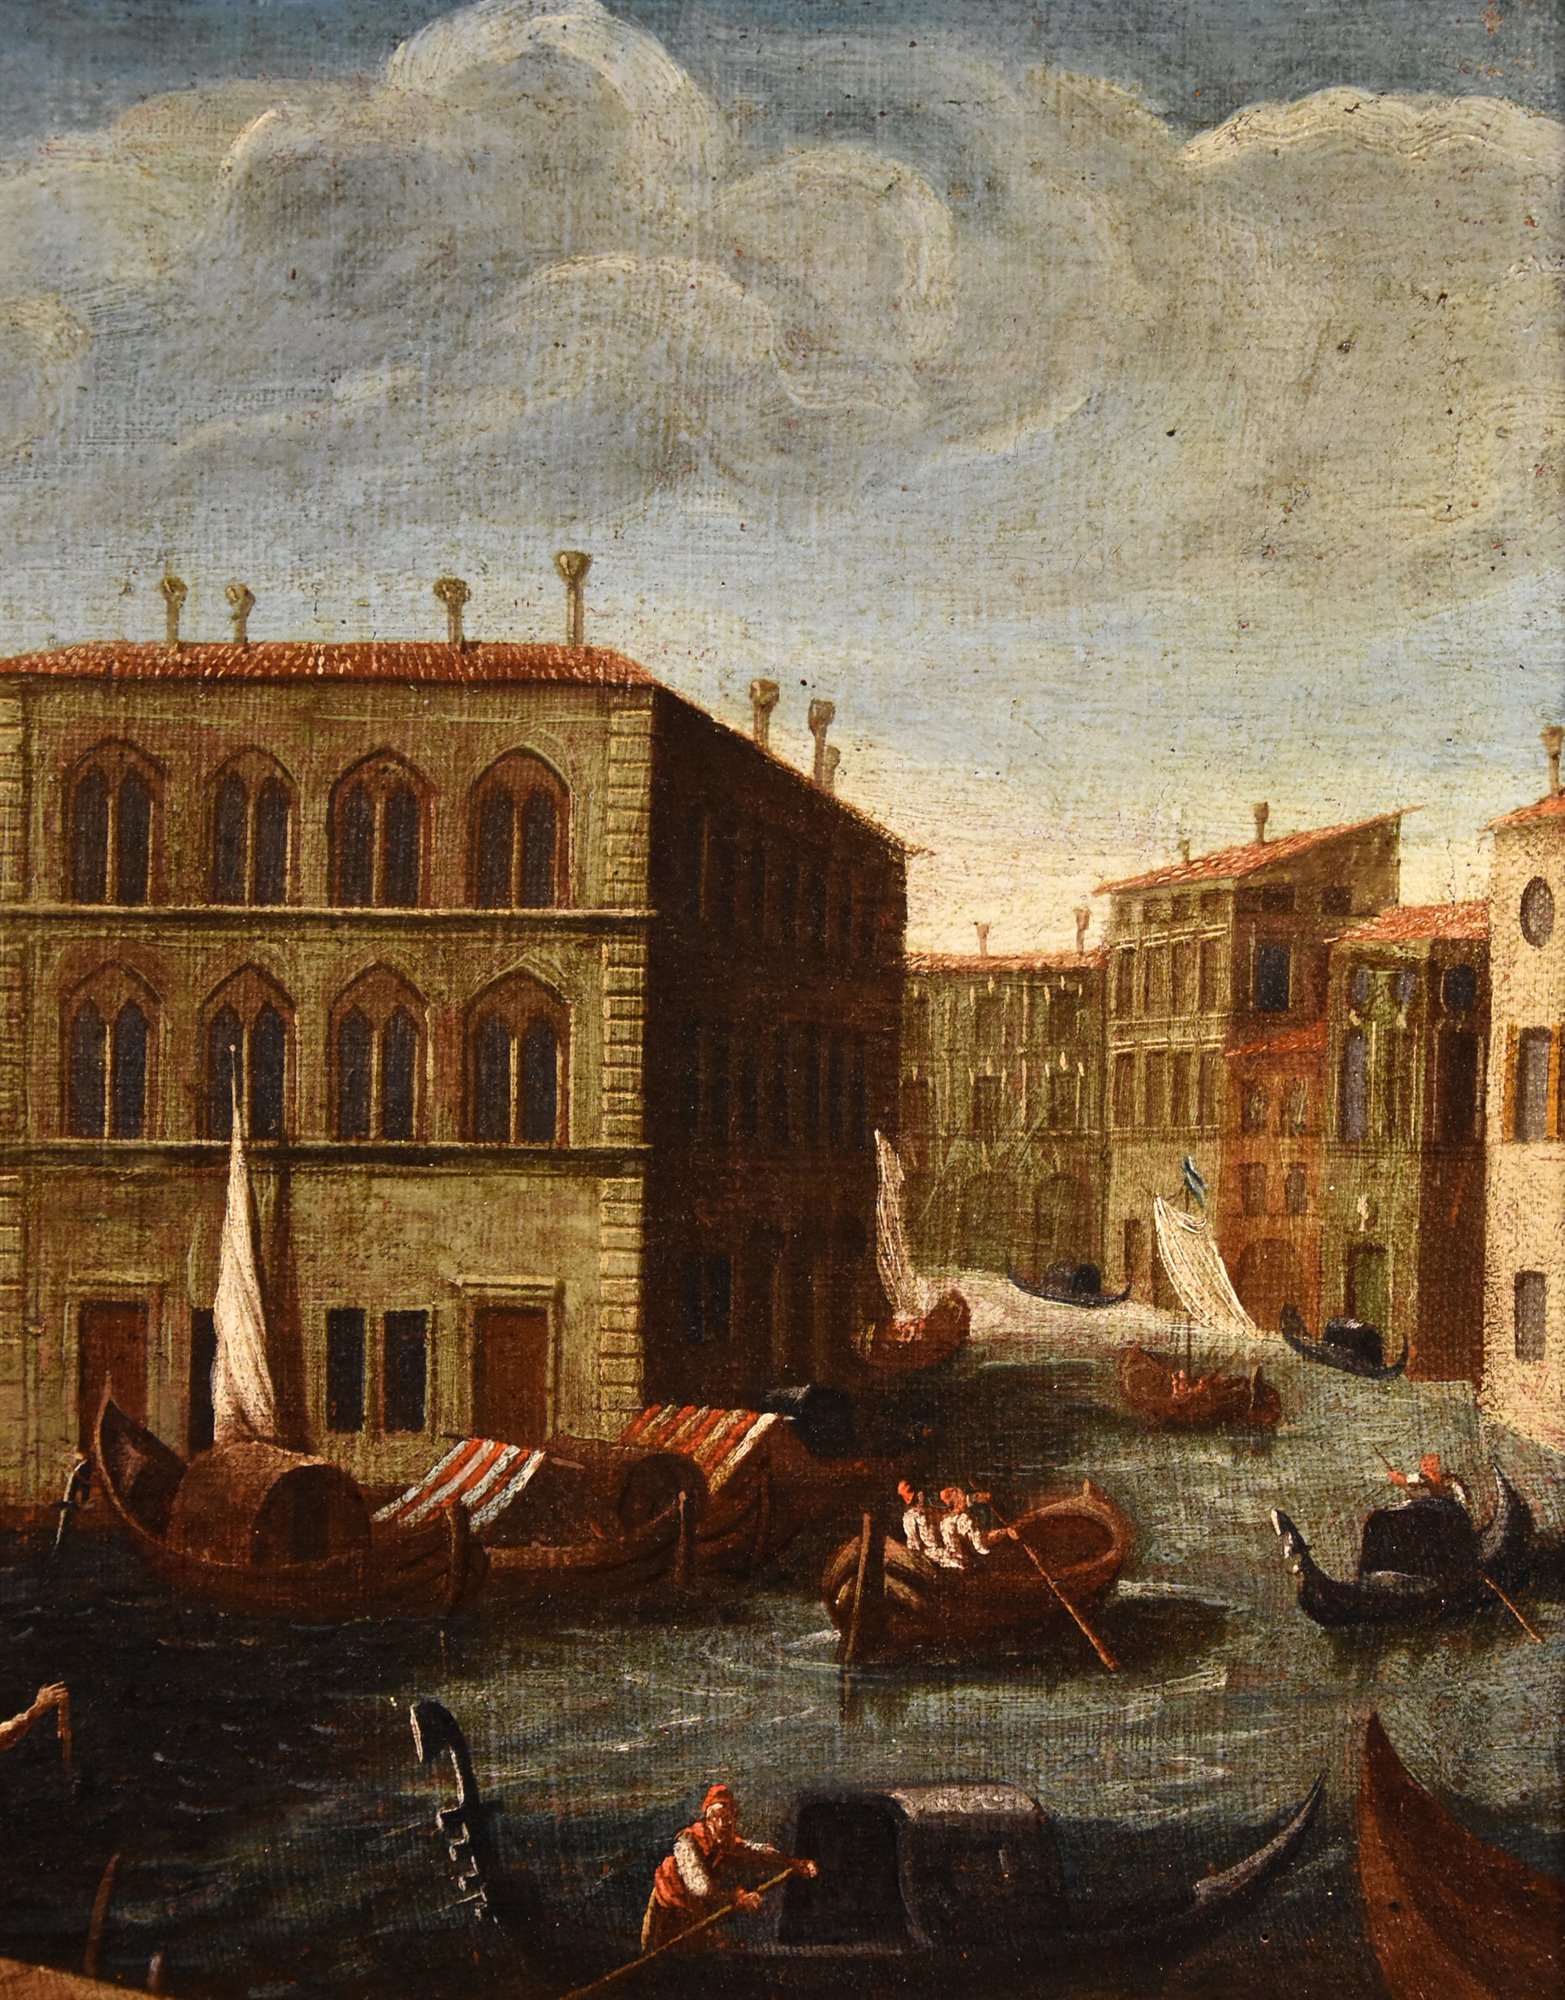 Veduta del Ponte di Rialto e del Palazzo dei Camerlenghi a Venezia